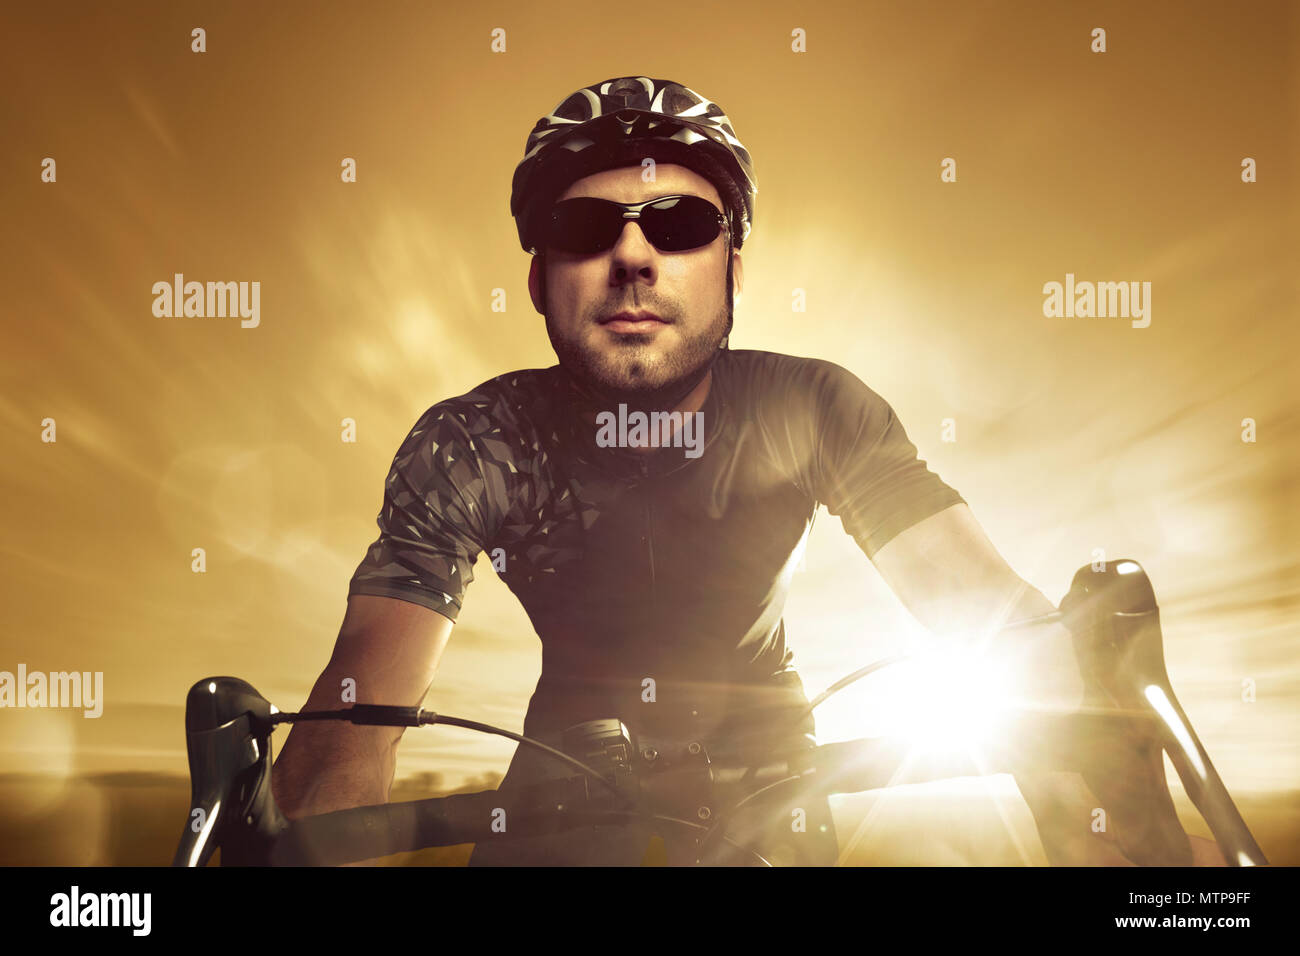 Vista frontal de un ciclista durante la puesta de sol Foto de stock